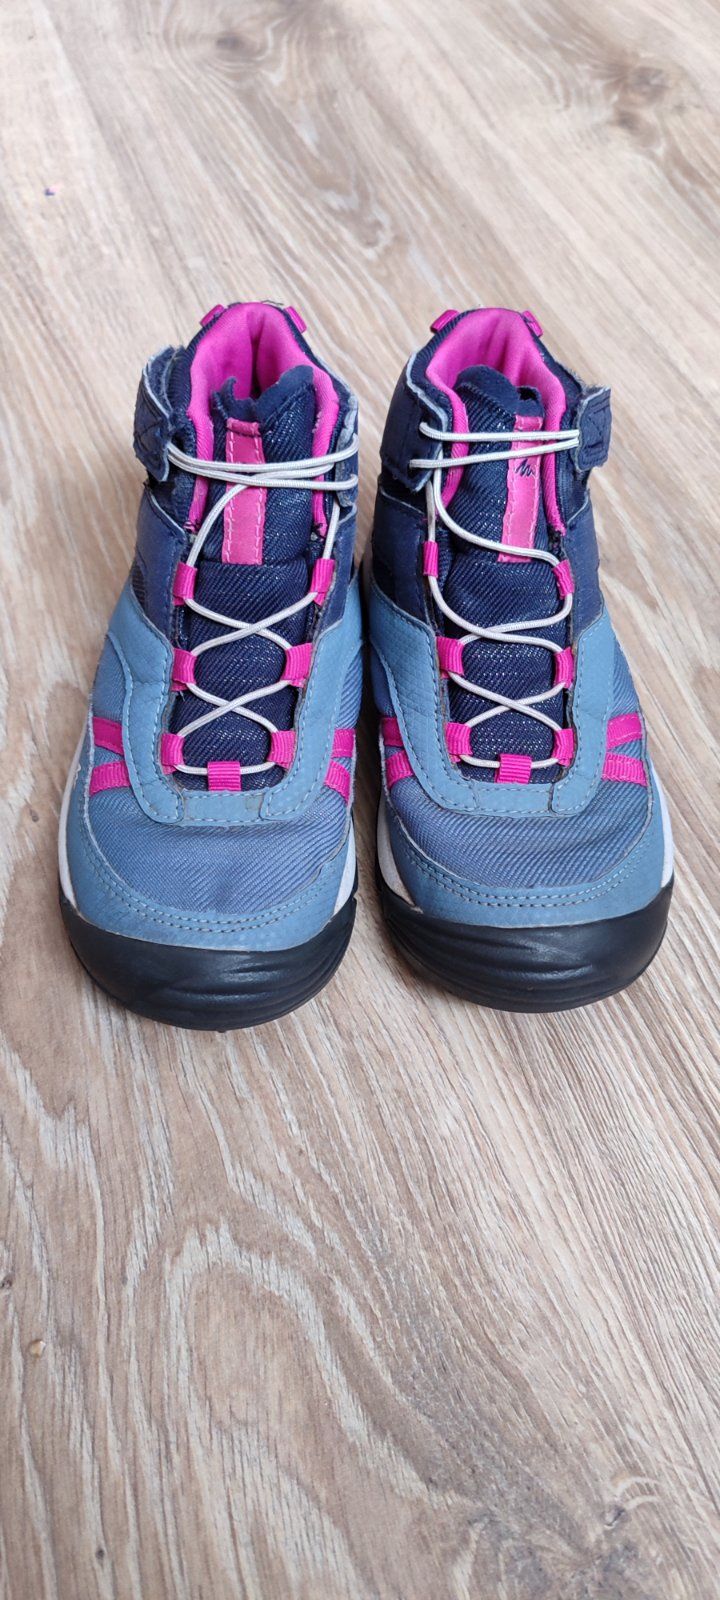 Ботинки Quechua водонепронекні